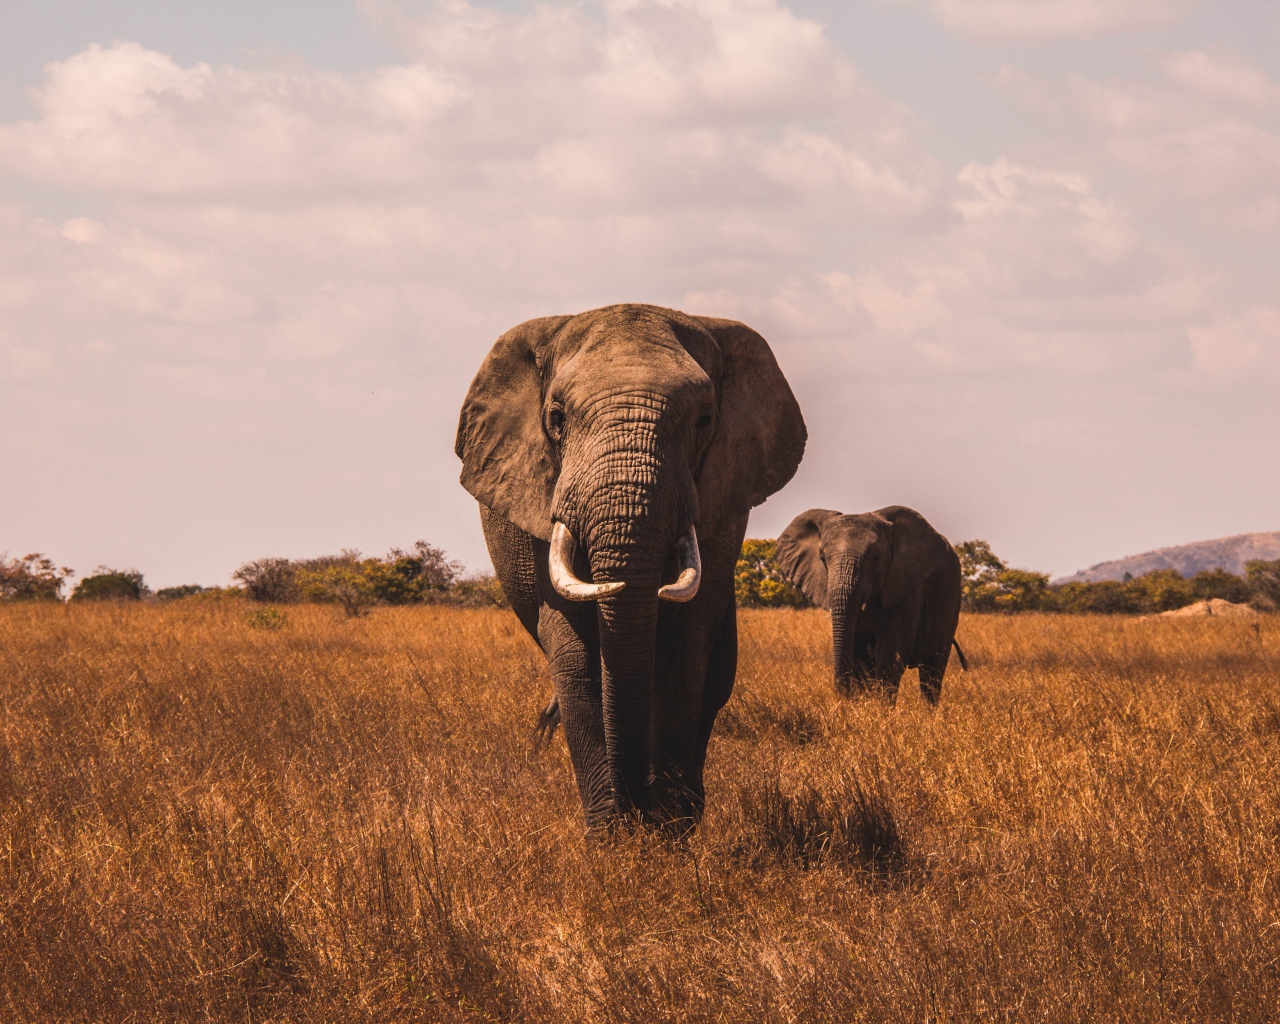 Большие слоны идут по сухой траве